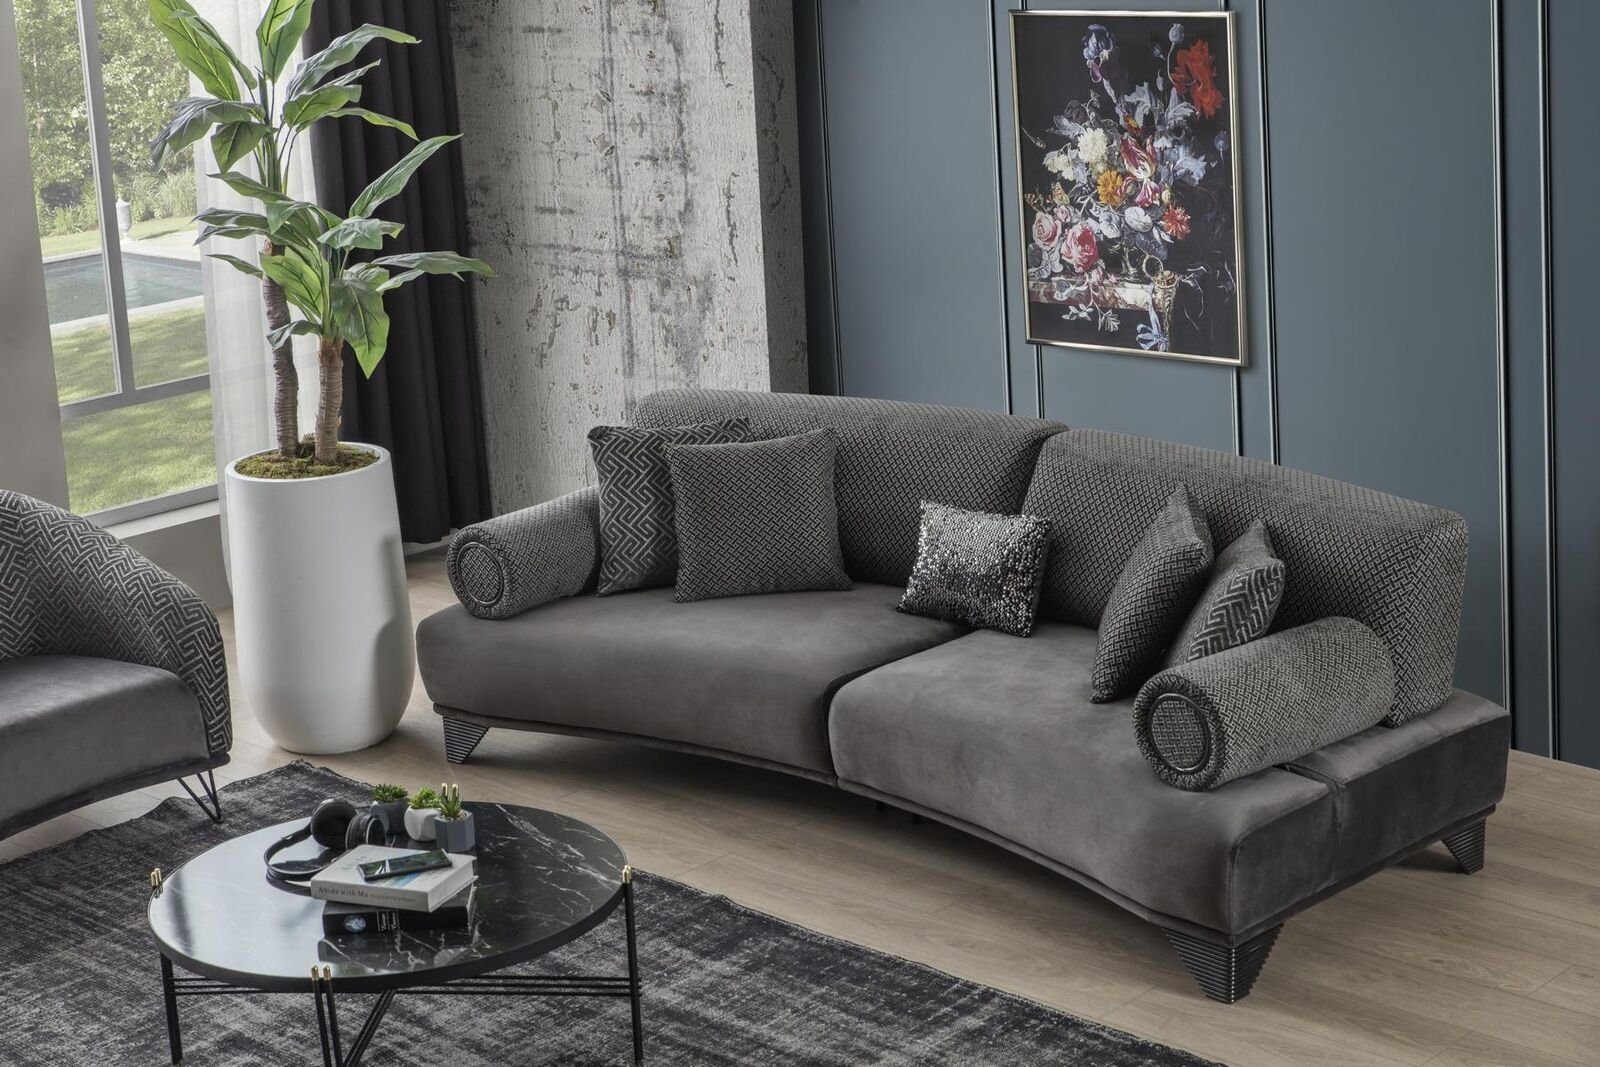 JVmoebel Luxus Stoff Design Sofa Sofa Gebogene Dreisitzer Wohnzimmer Couch